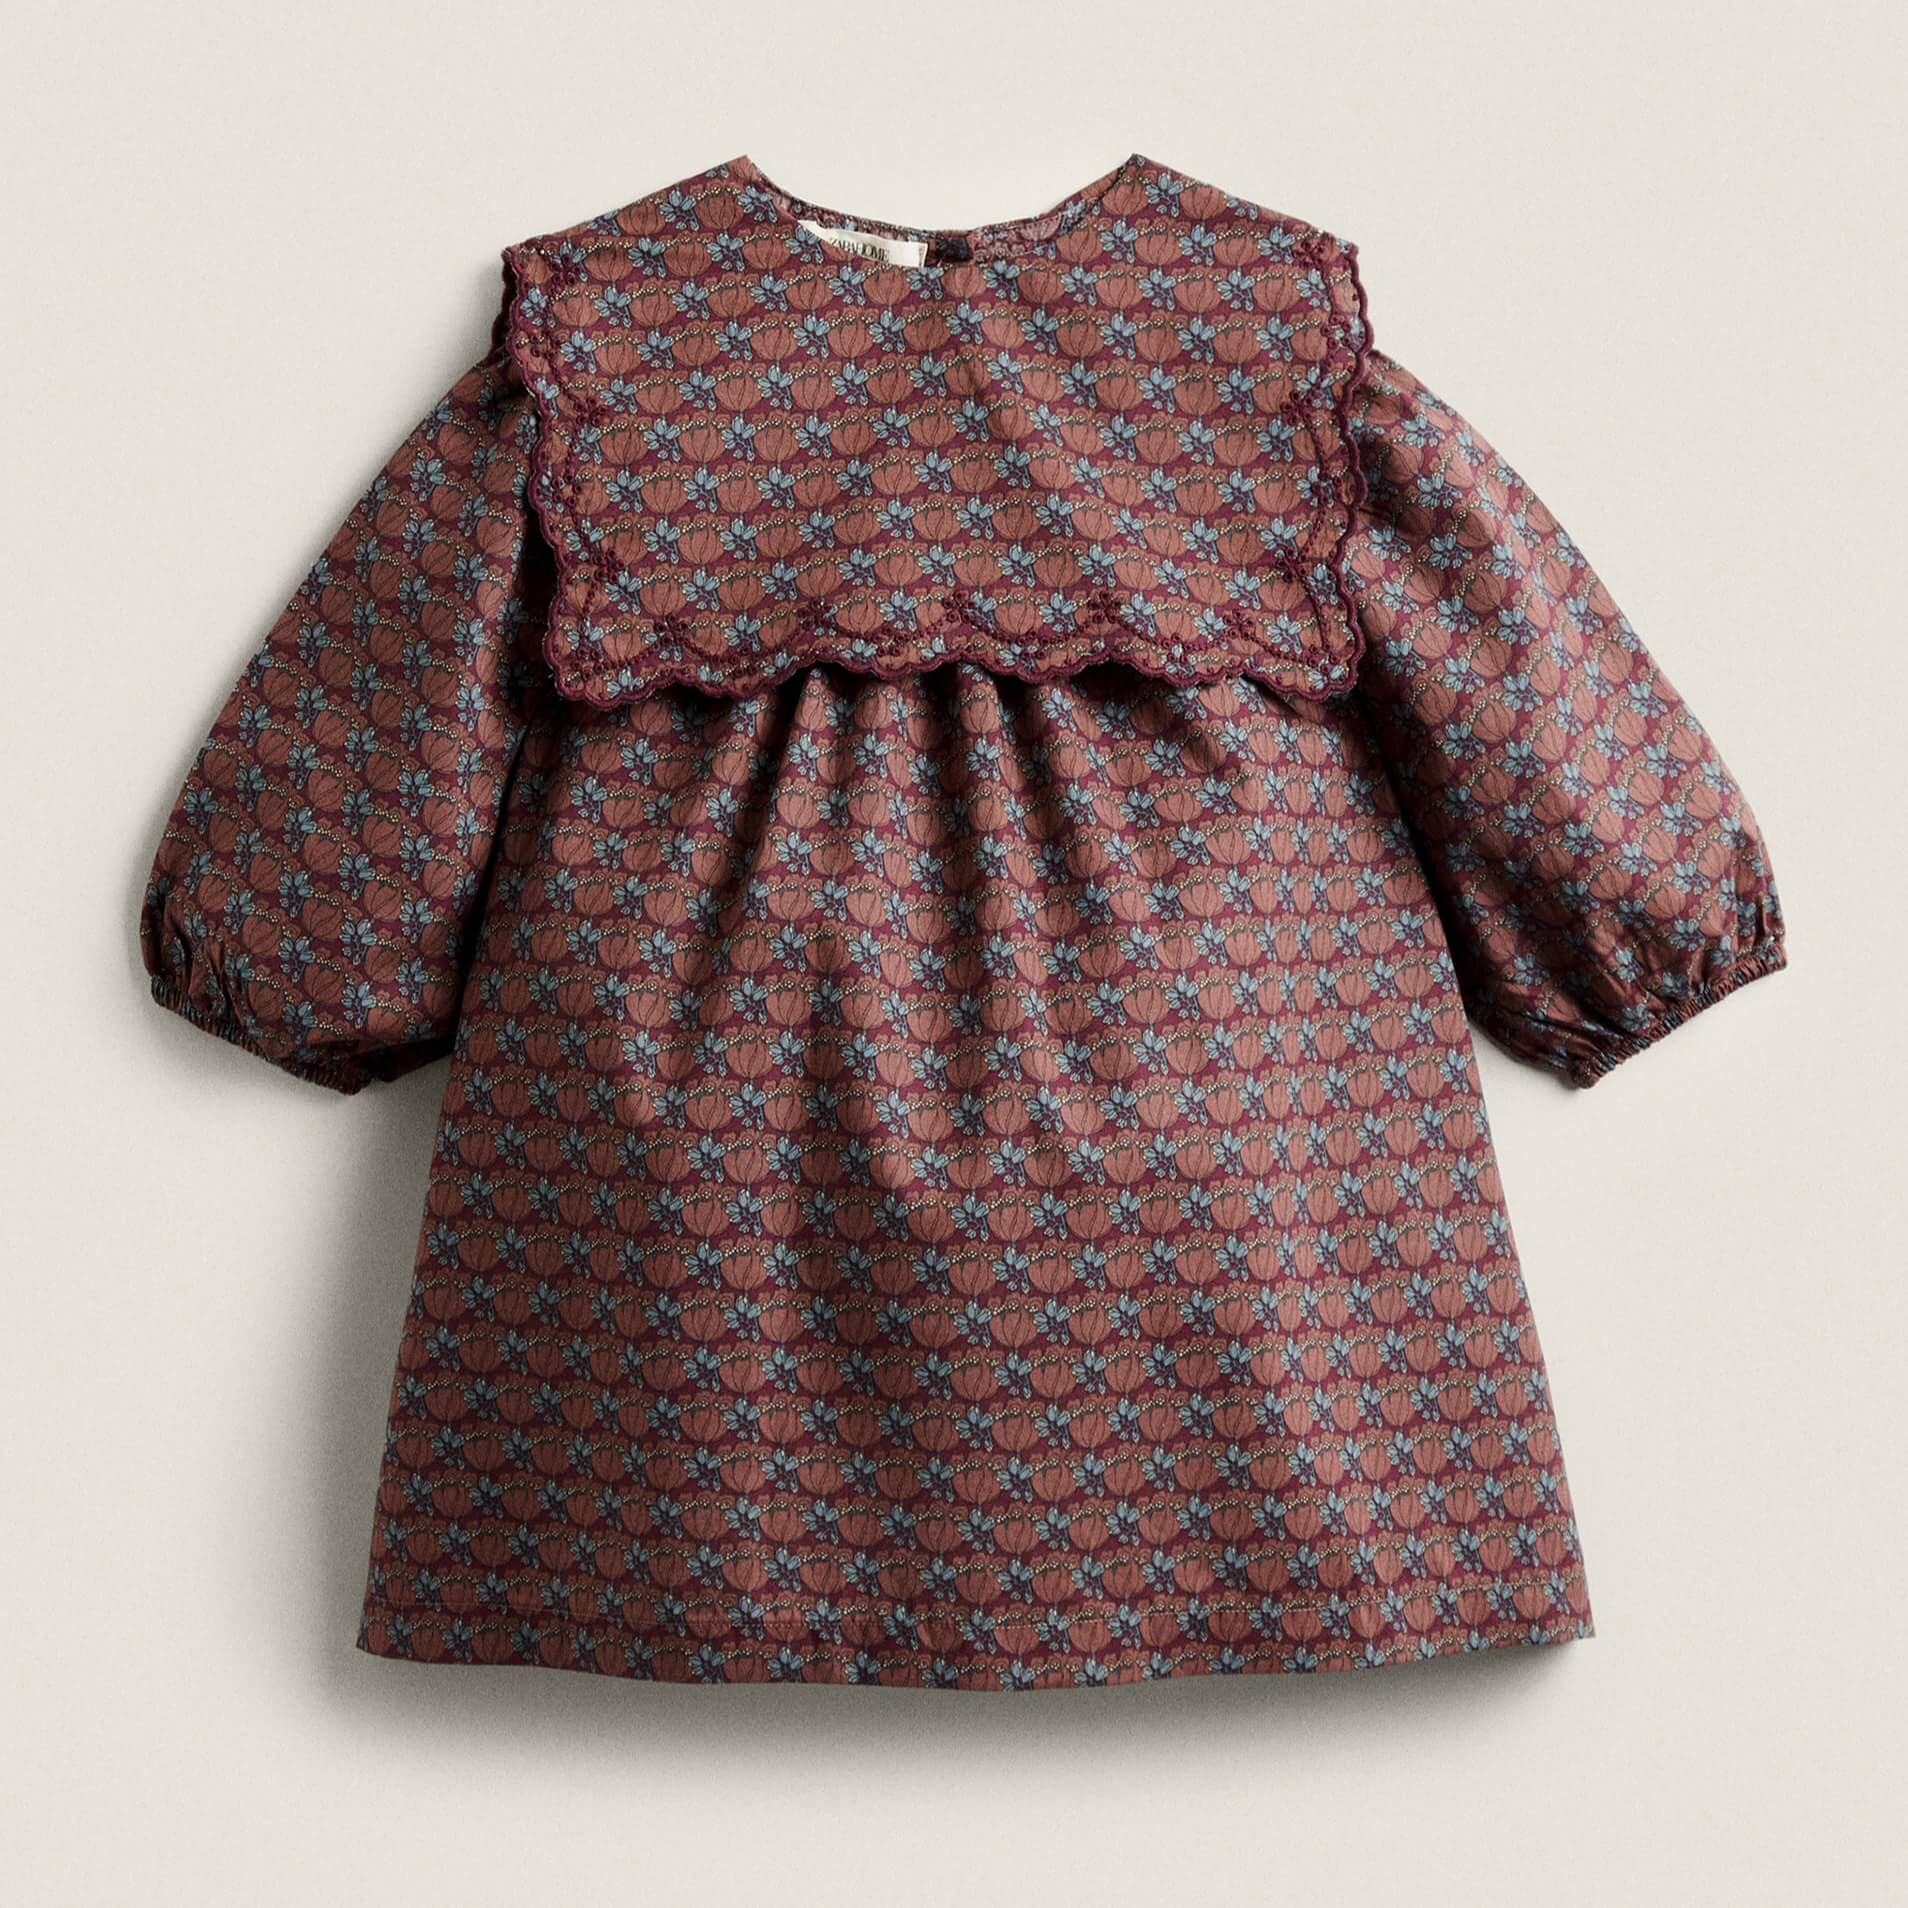 Платье Zara Home Made With Liberty Fabric Children’s белая тонкая летняя рубашка с воротником питер пэн 2021